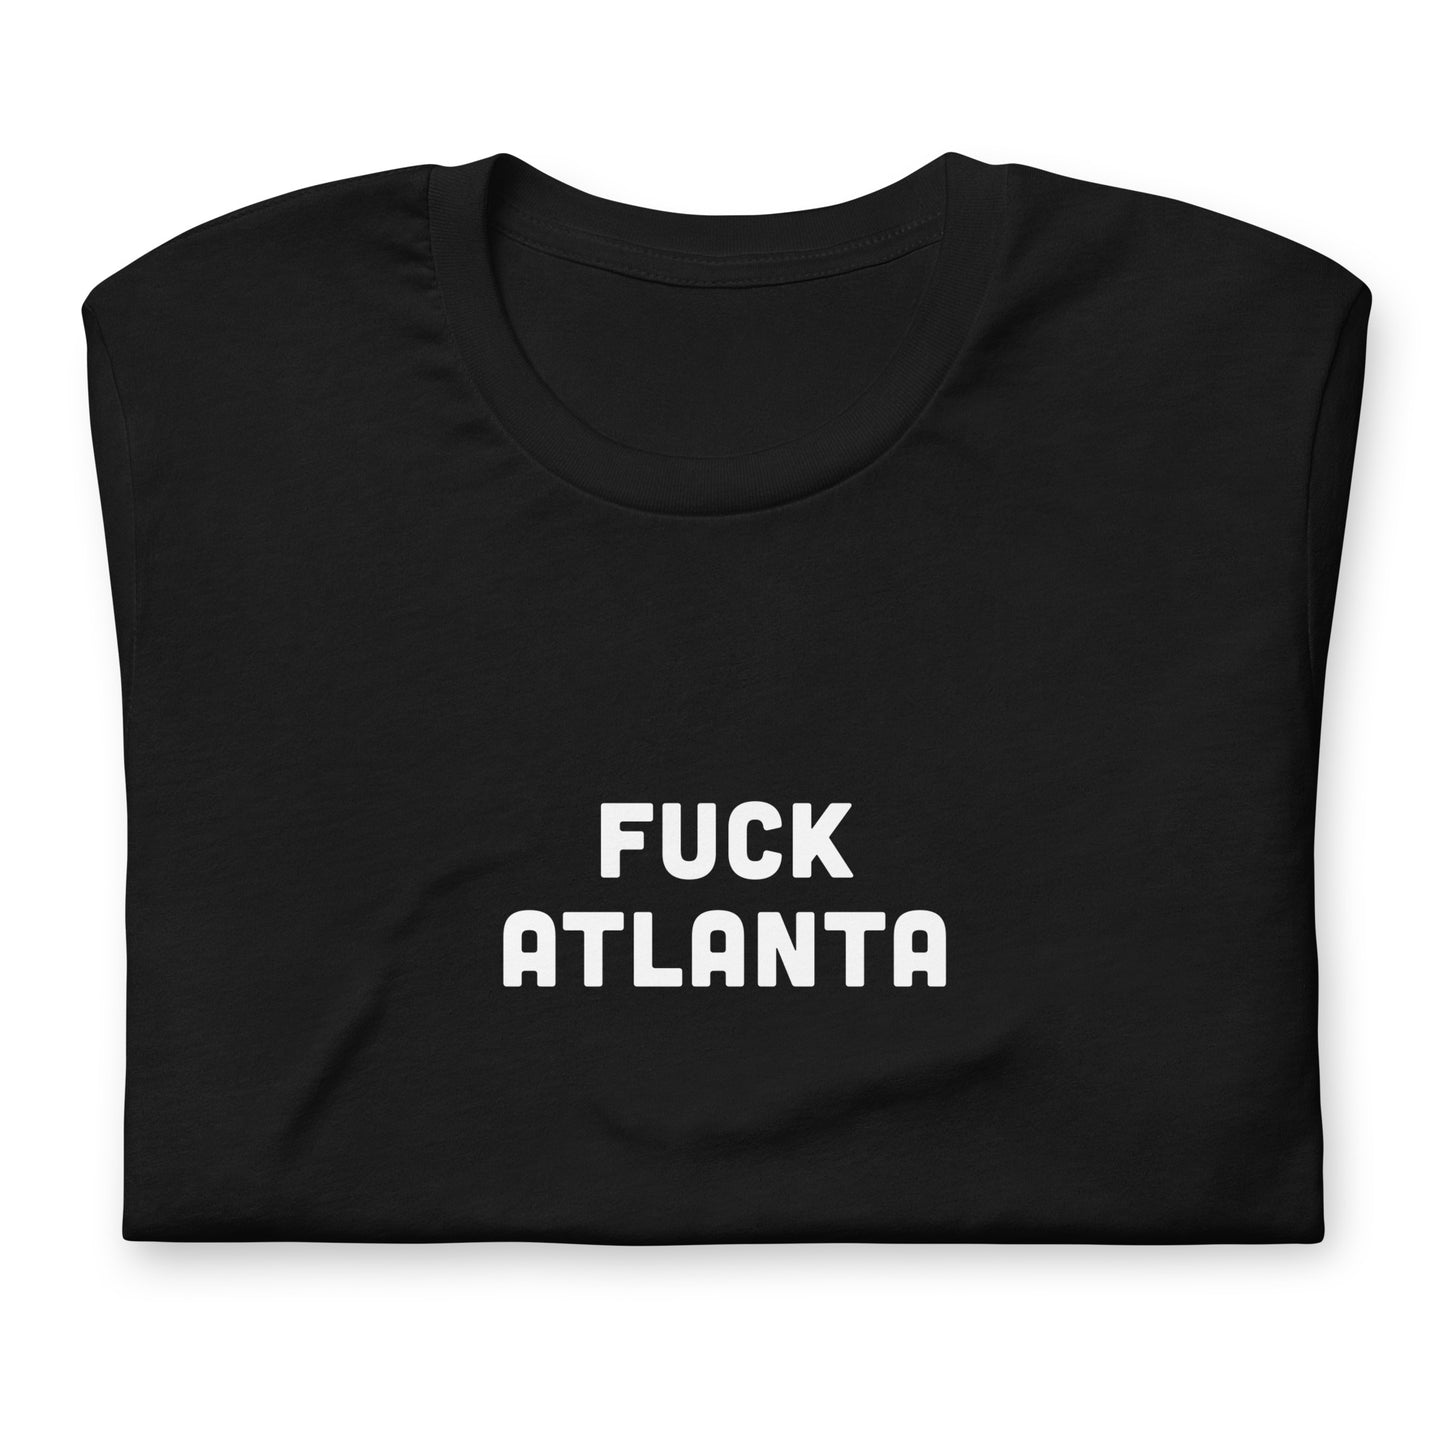 Fuck Atlanta T-Shirt Size 2XL Color Black